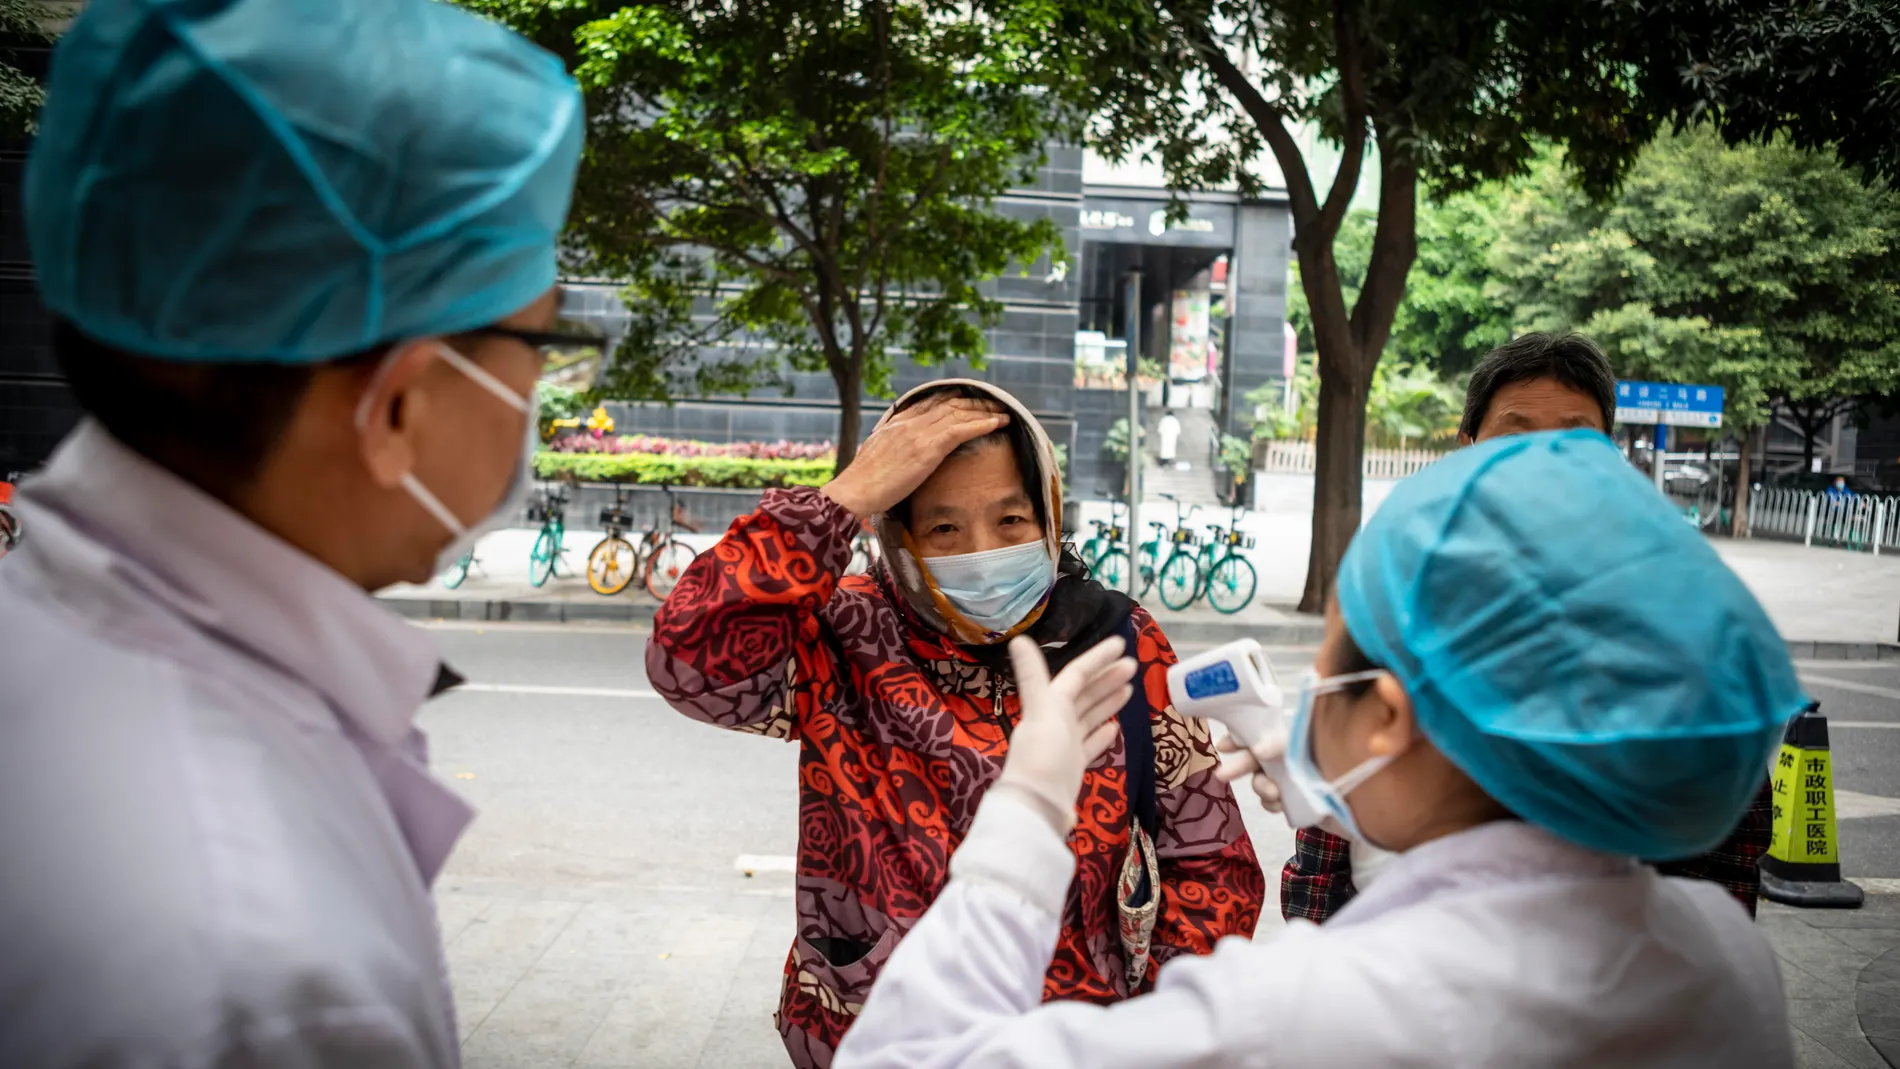 Coronavirus prevention efforts in China